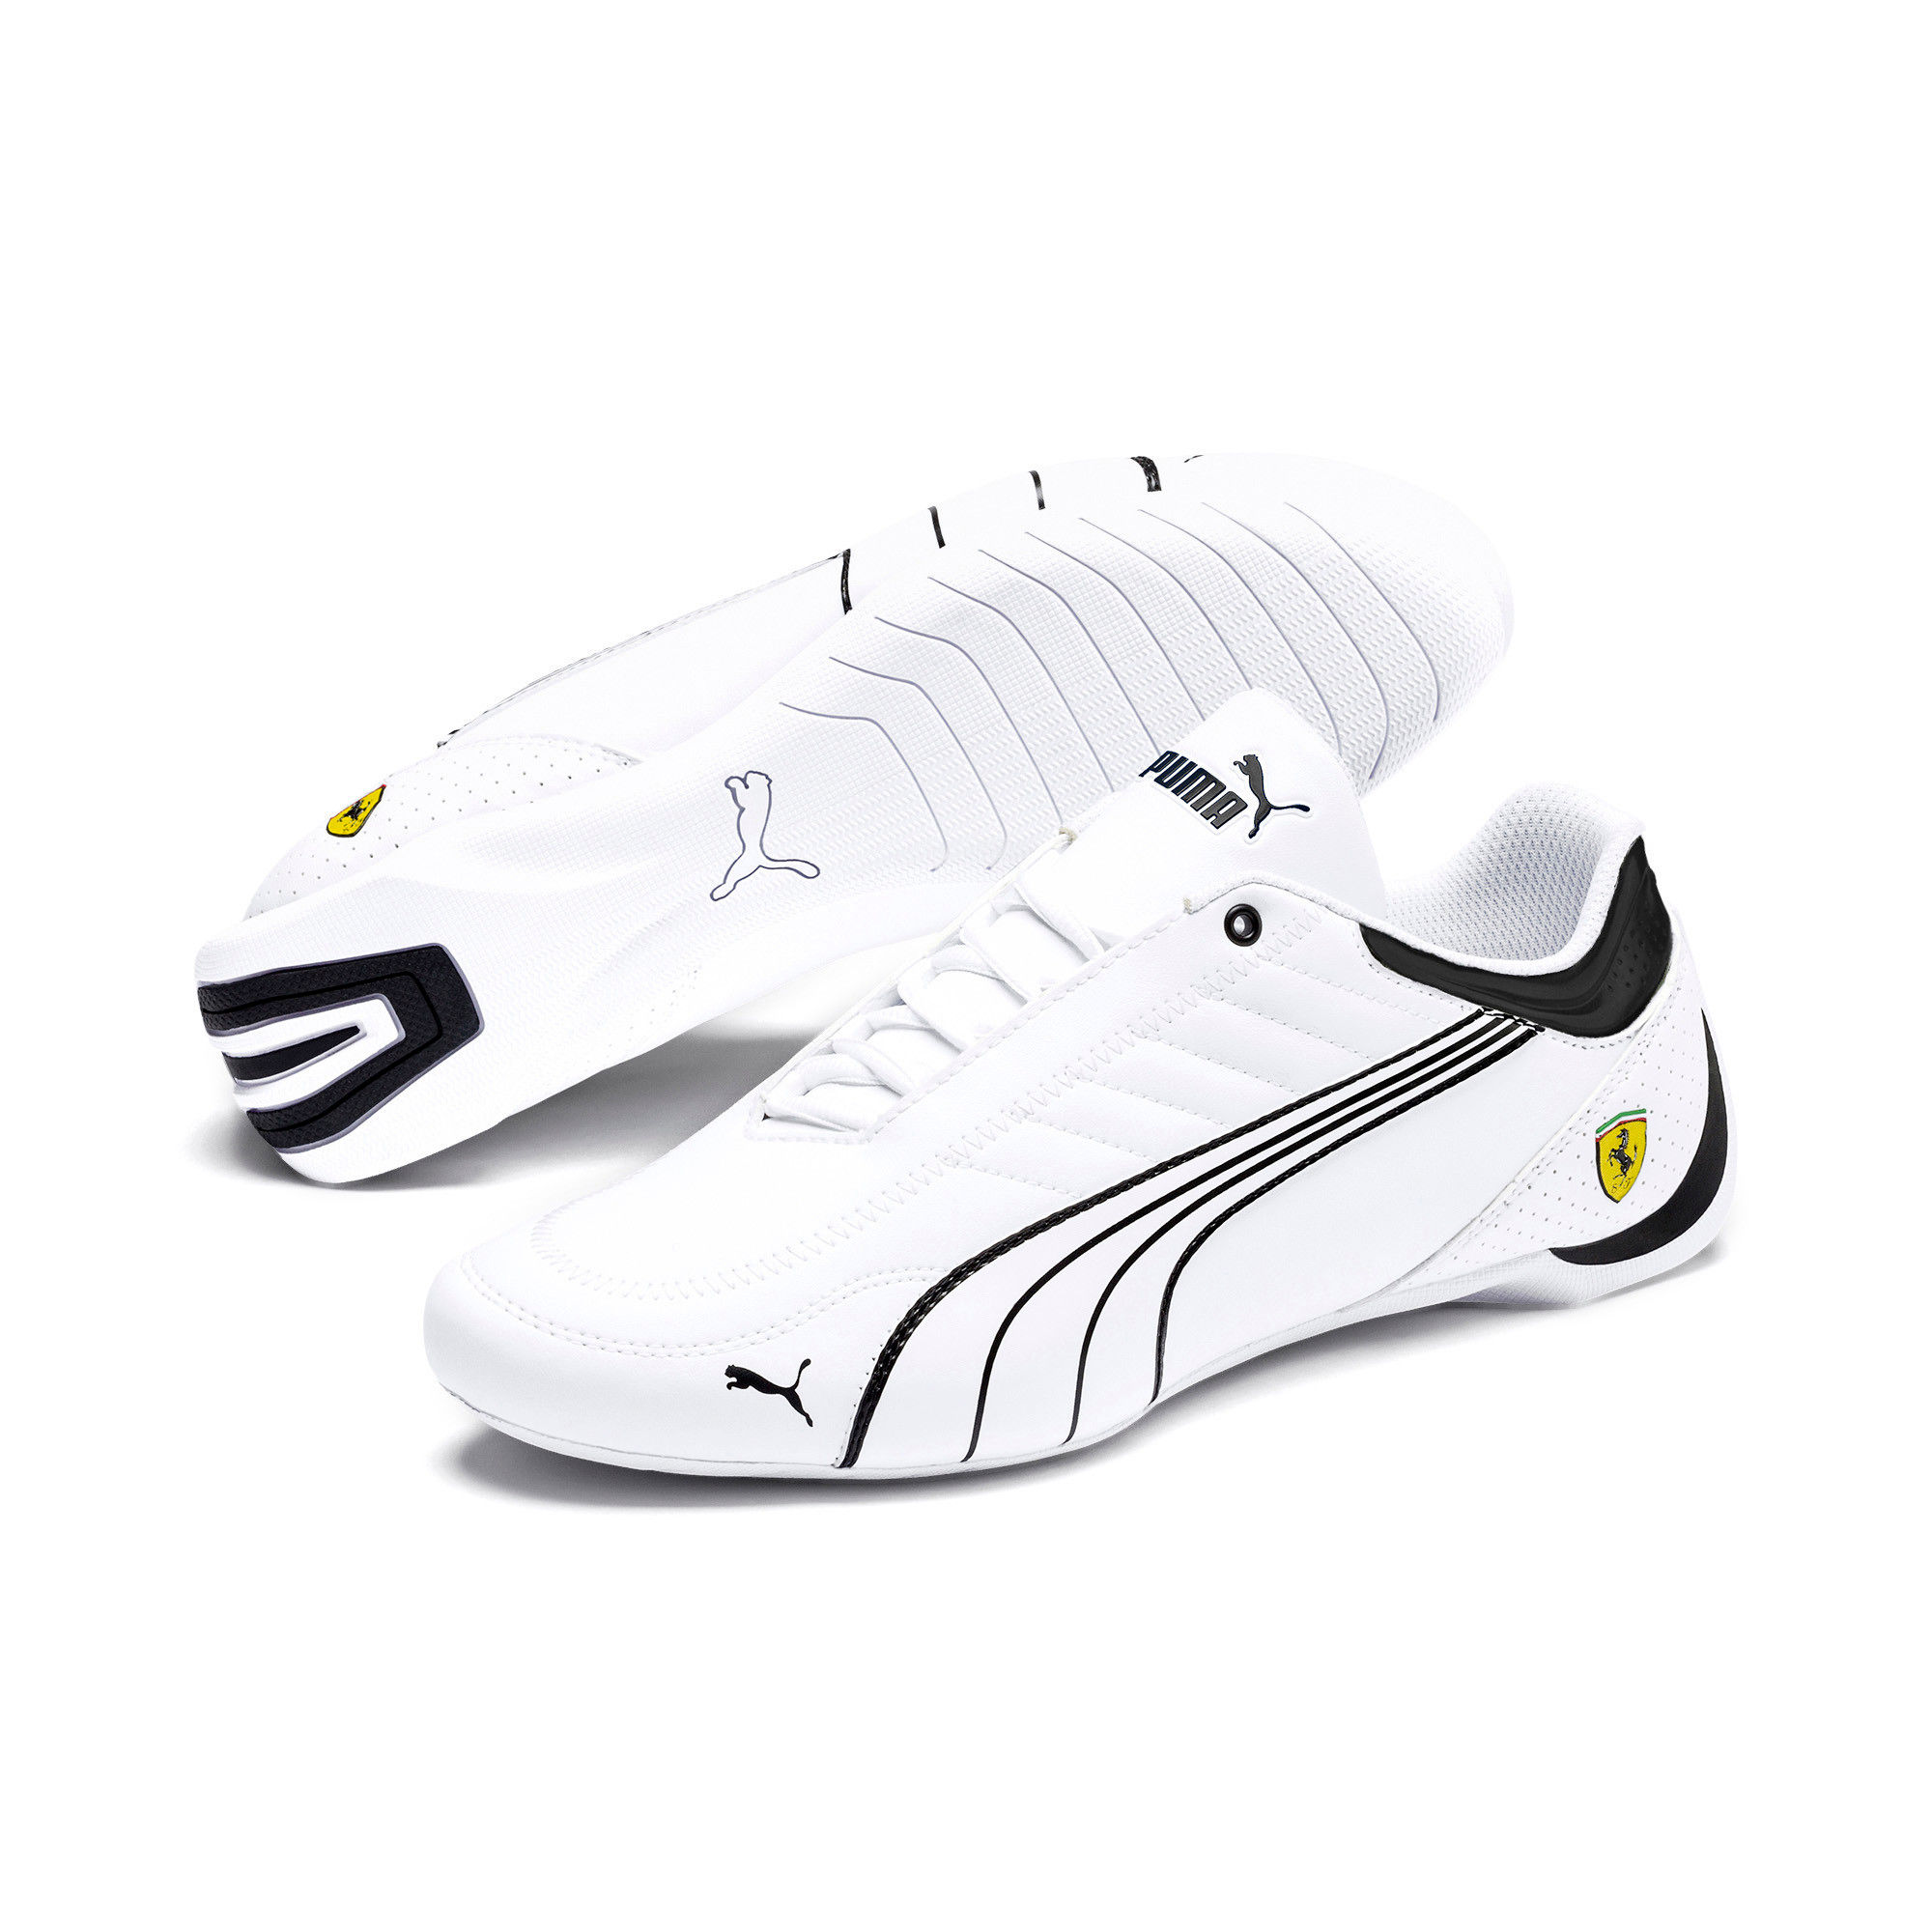 Share more than 72 puma ferrari shoes white best